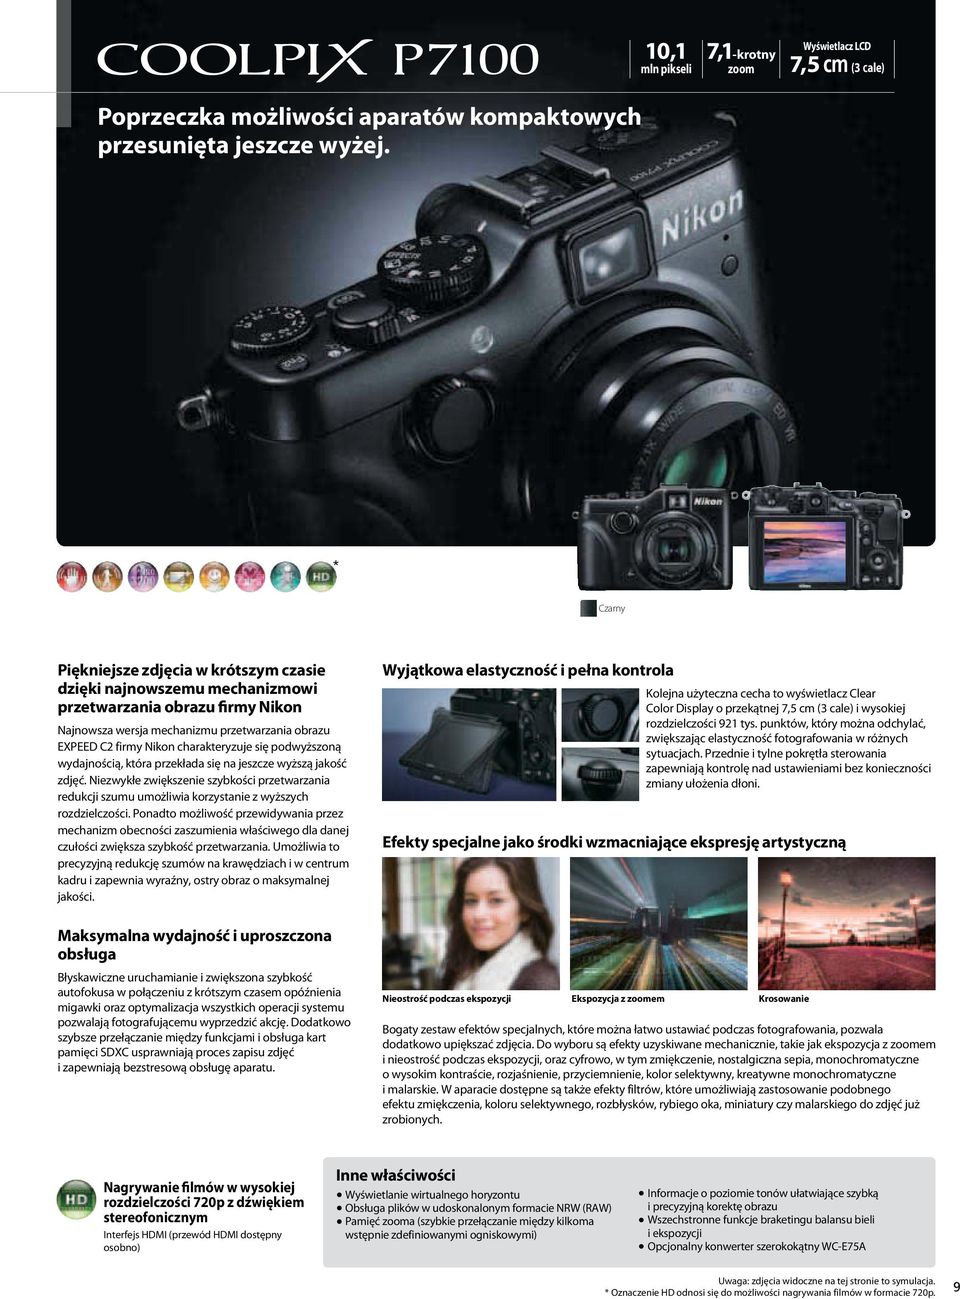 C2 firmy Nikon charakteryzuje się podwyższoną wydajnością, która przekłada się na jeszcze wyższą jakość zdjęć.